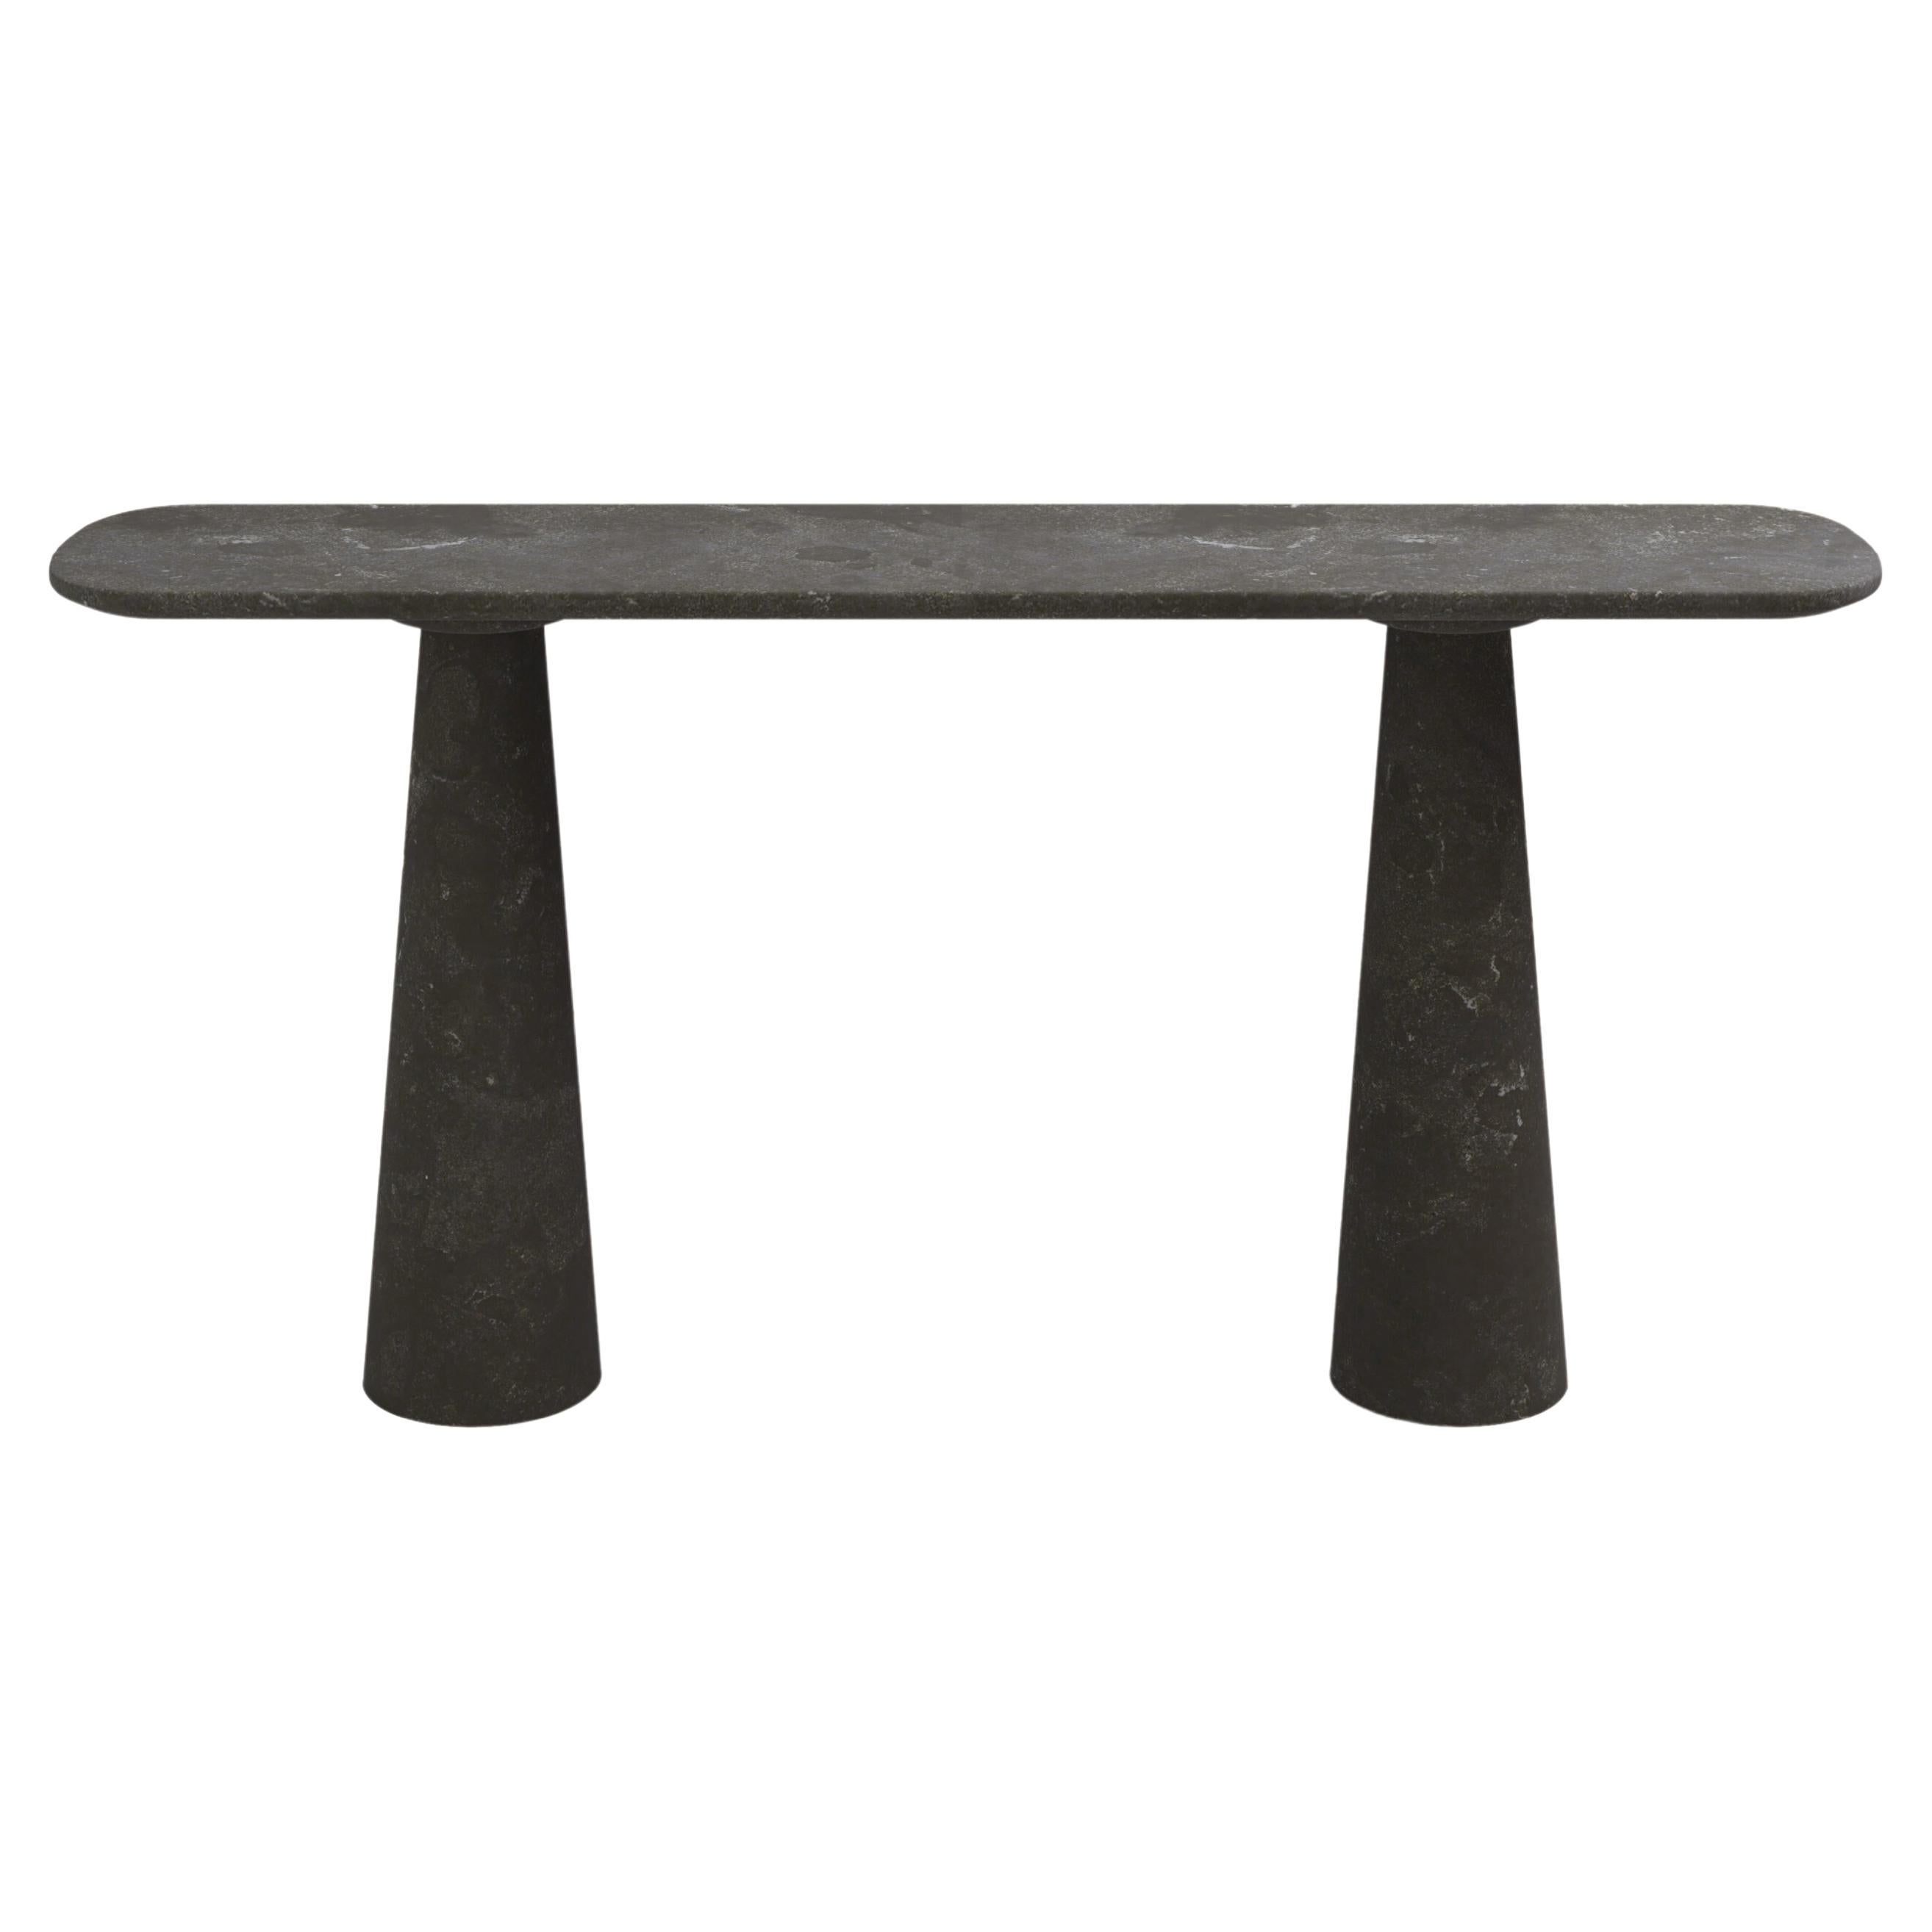 FORM(LA) Cono Console Table 84”L x 15”W x 33”H Nero Petite Granite For Sale